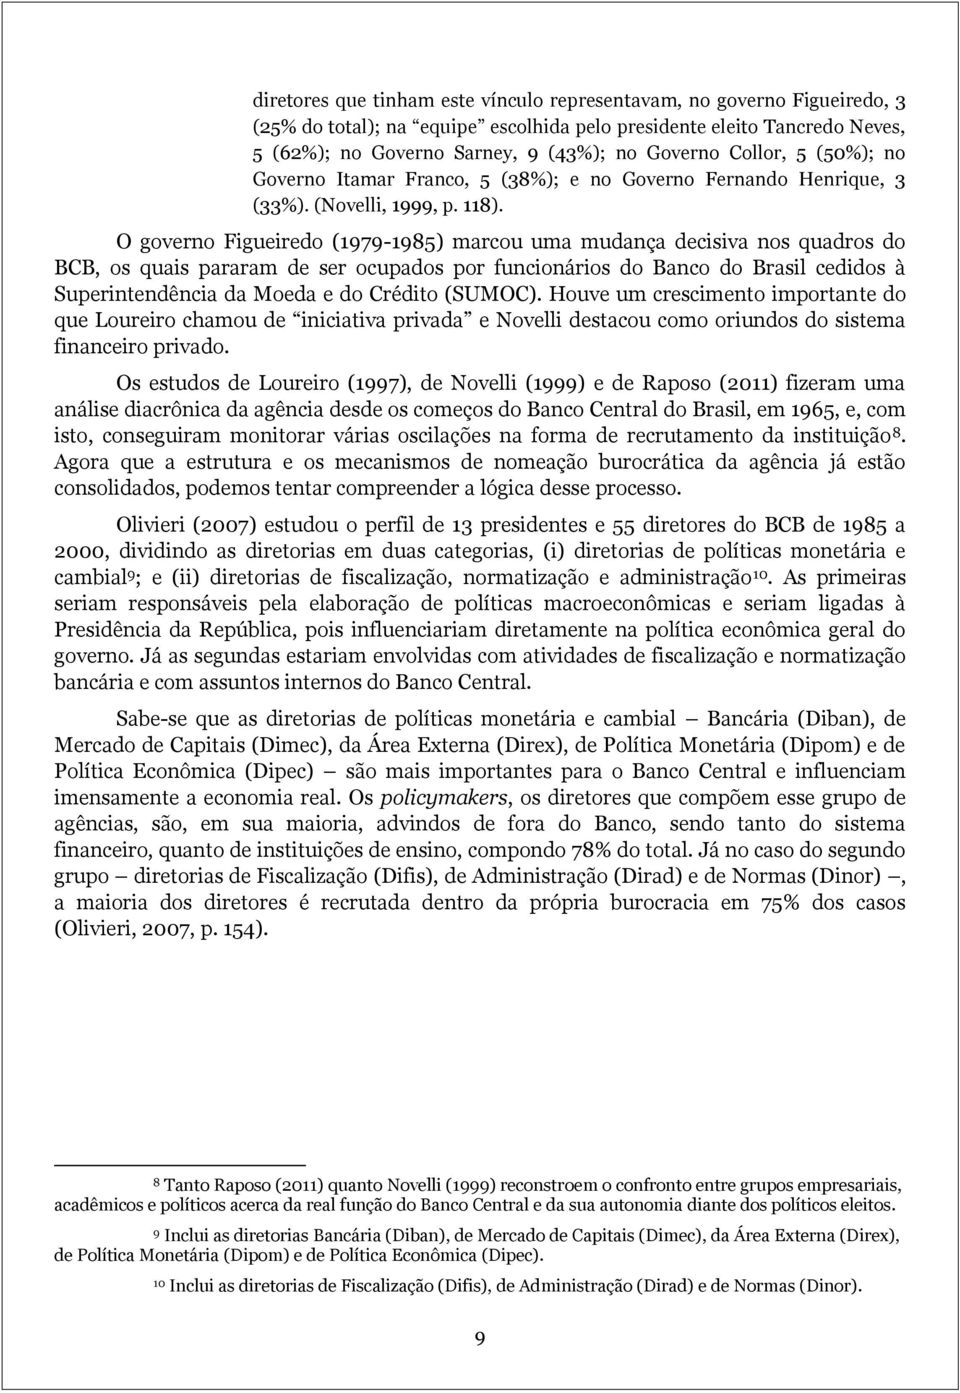 O governo Figueiredo (1979-1985) marcou uma mudança decisiva nos quadros do BCB, os quais pararam de ser ocupados por funcionários do Banco do Brasil cedidos à Superintendência da Moeda e do Crédito